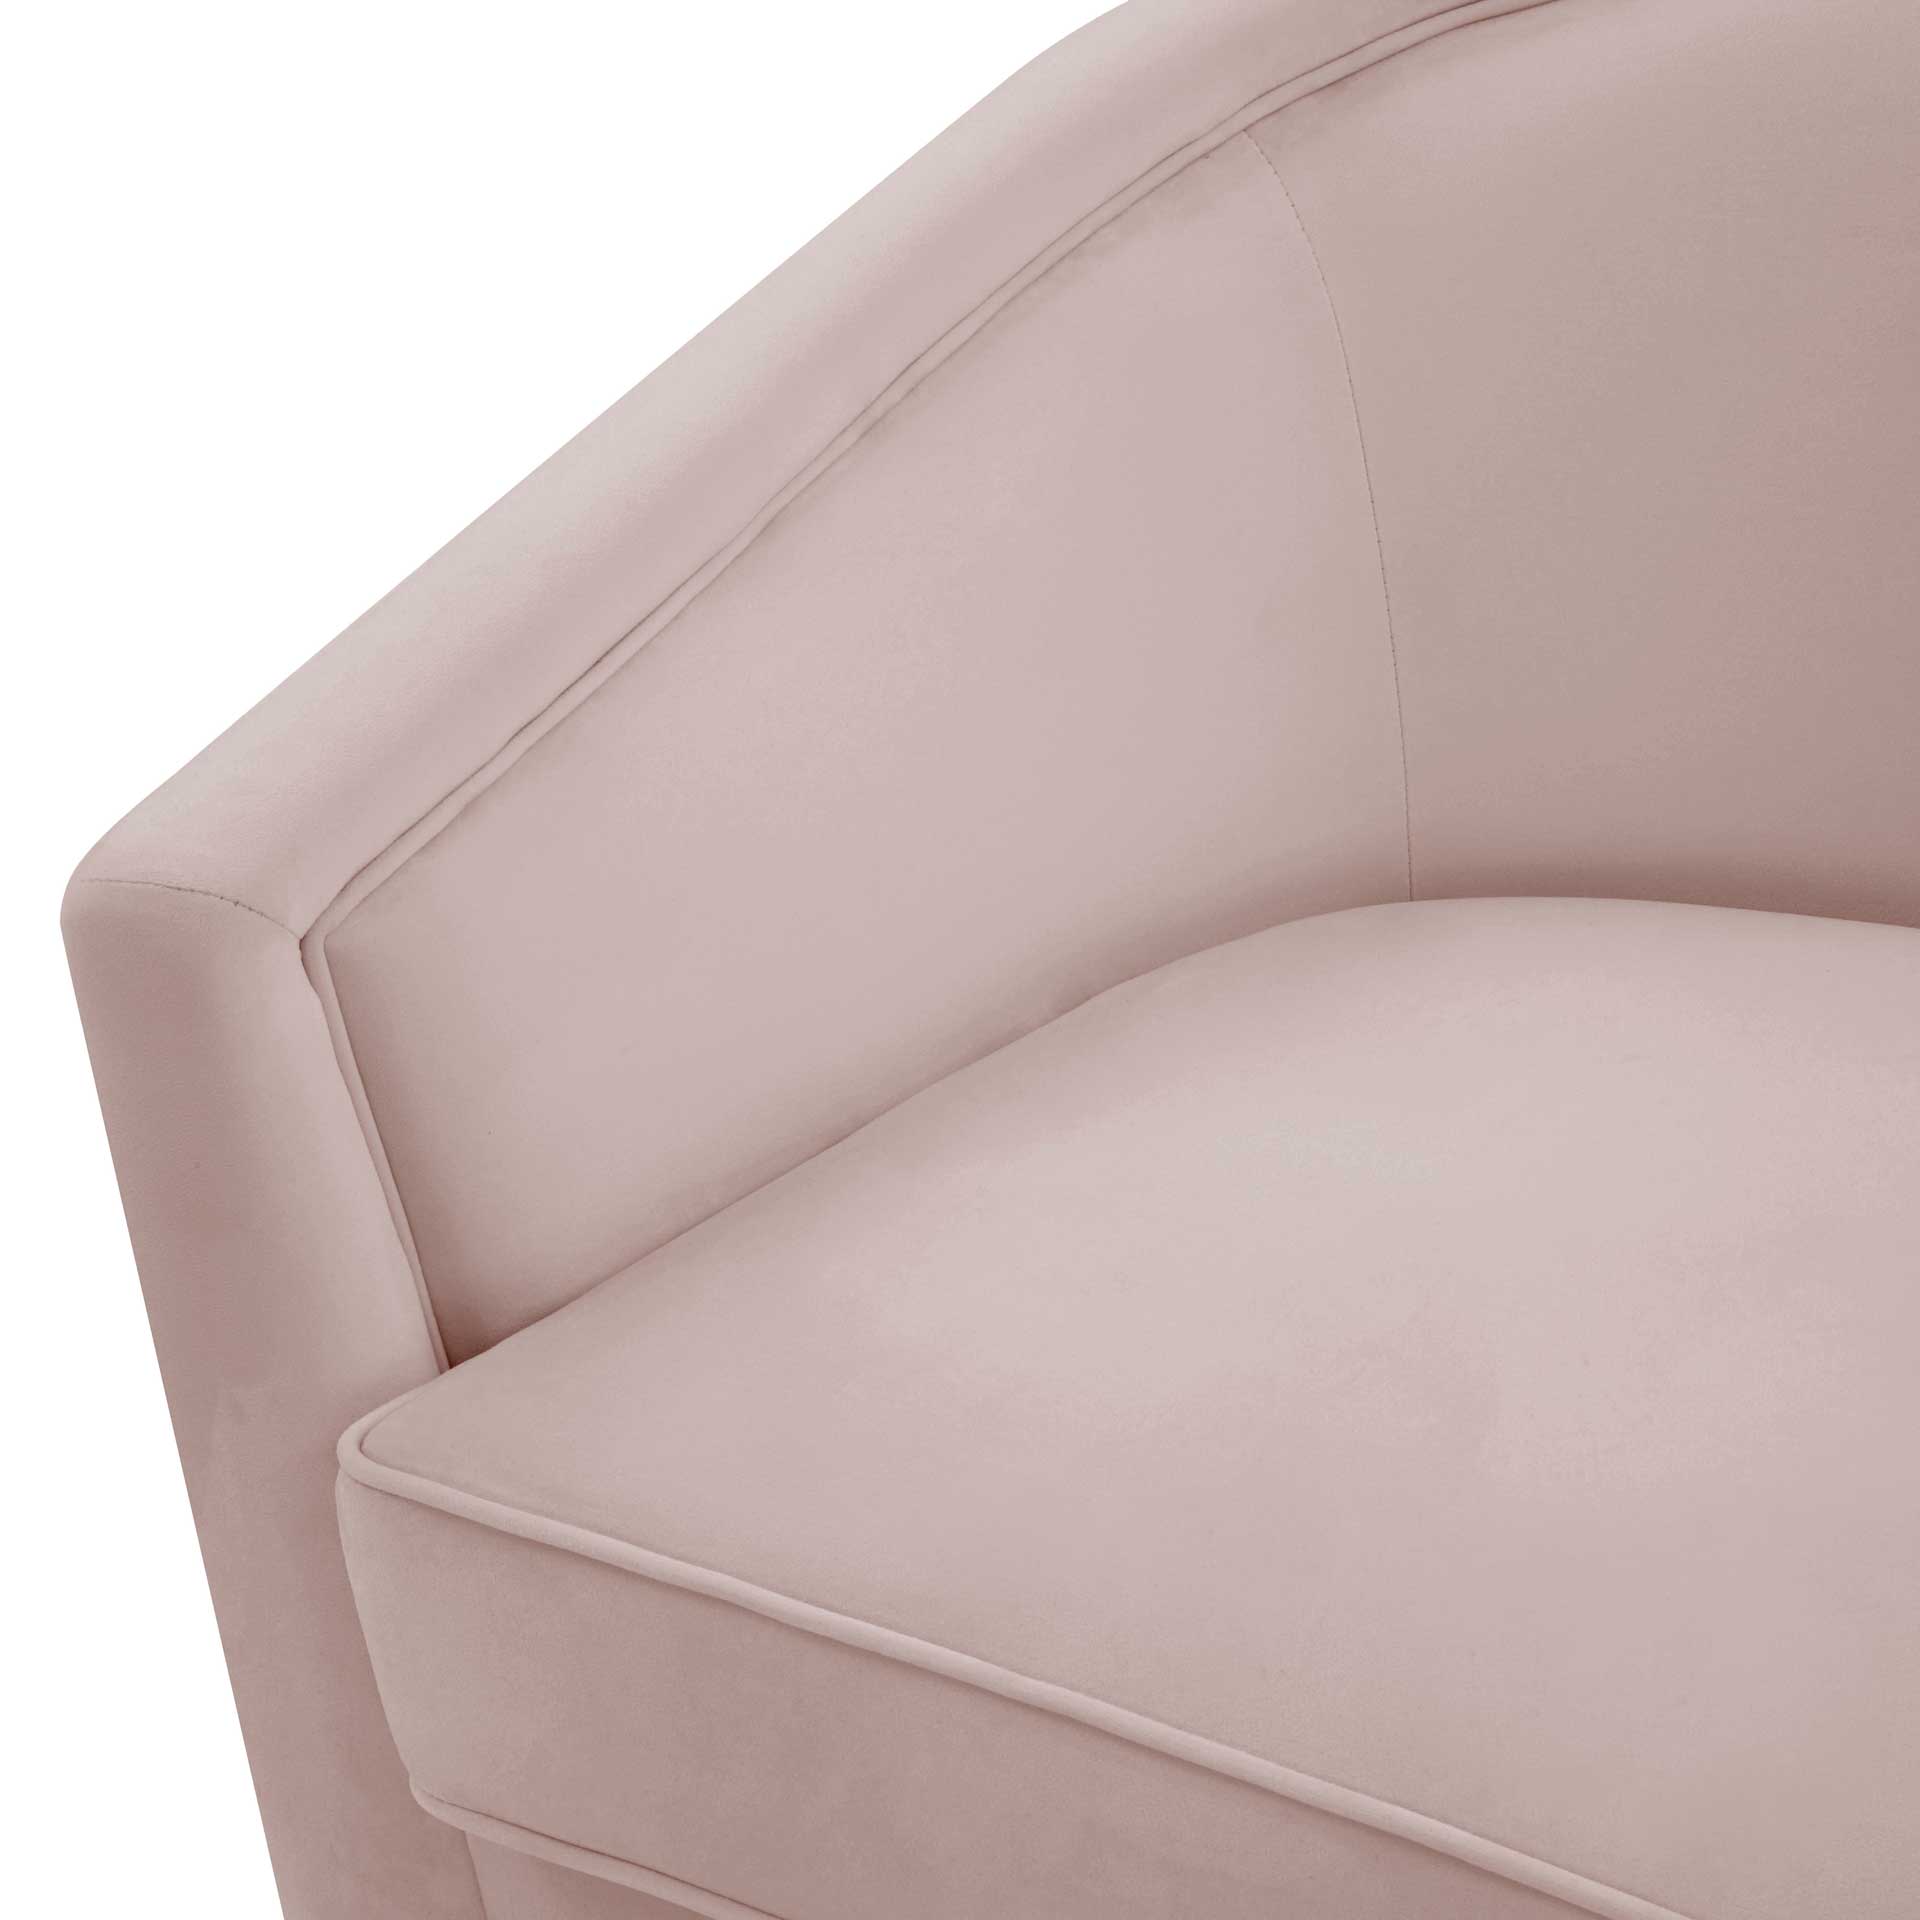 Fleur Swivel Chair Blush